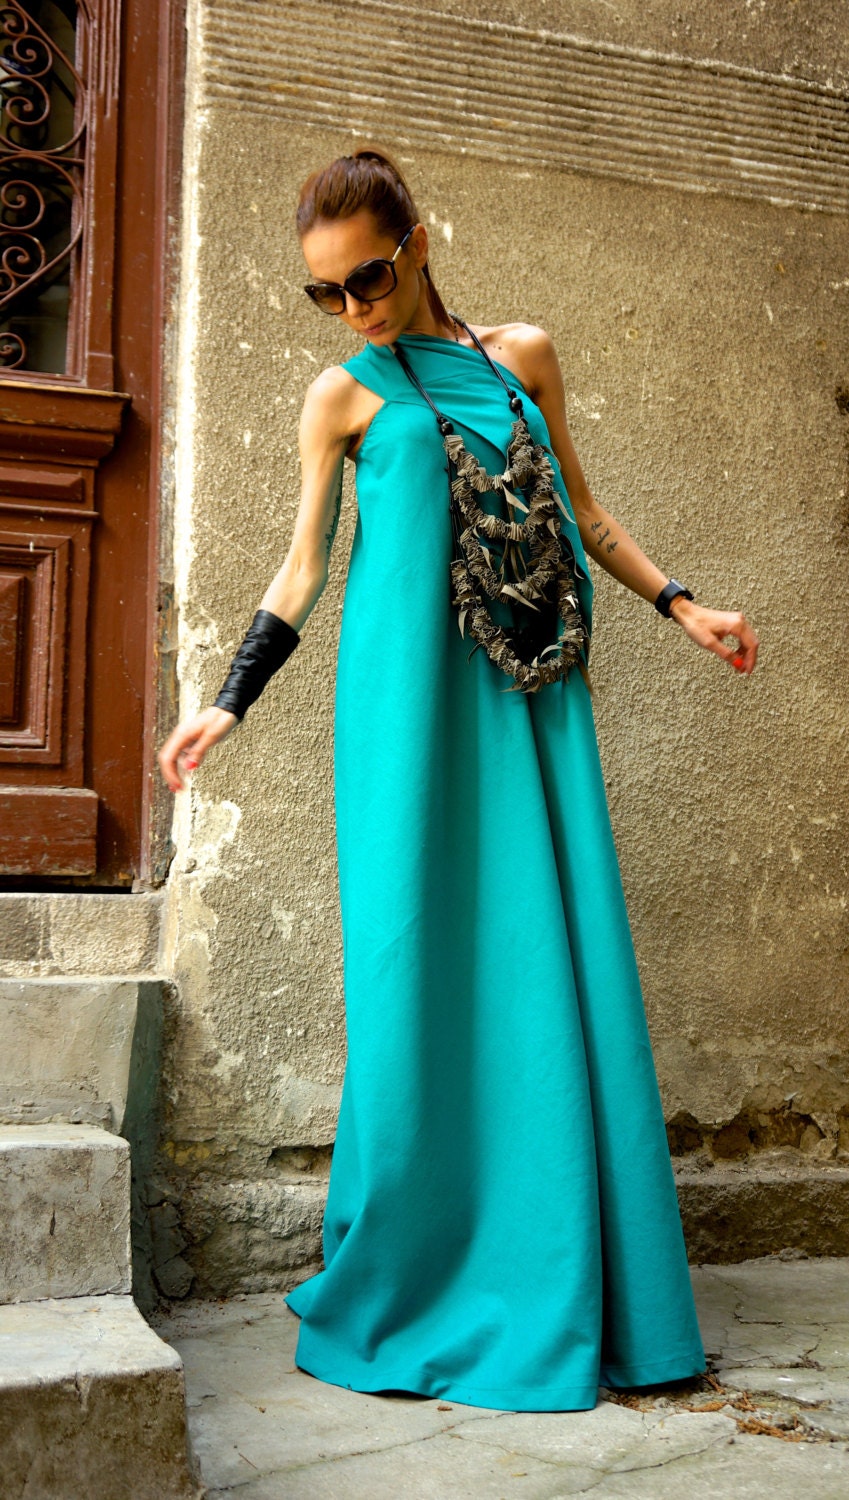 Hot Summer Maxi Dress Pine Green Linen Dress / One Shoulder | Etsy